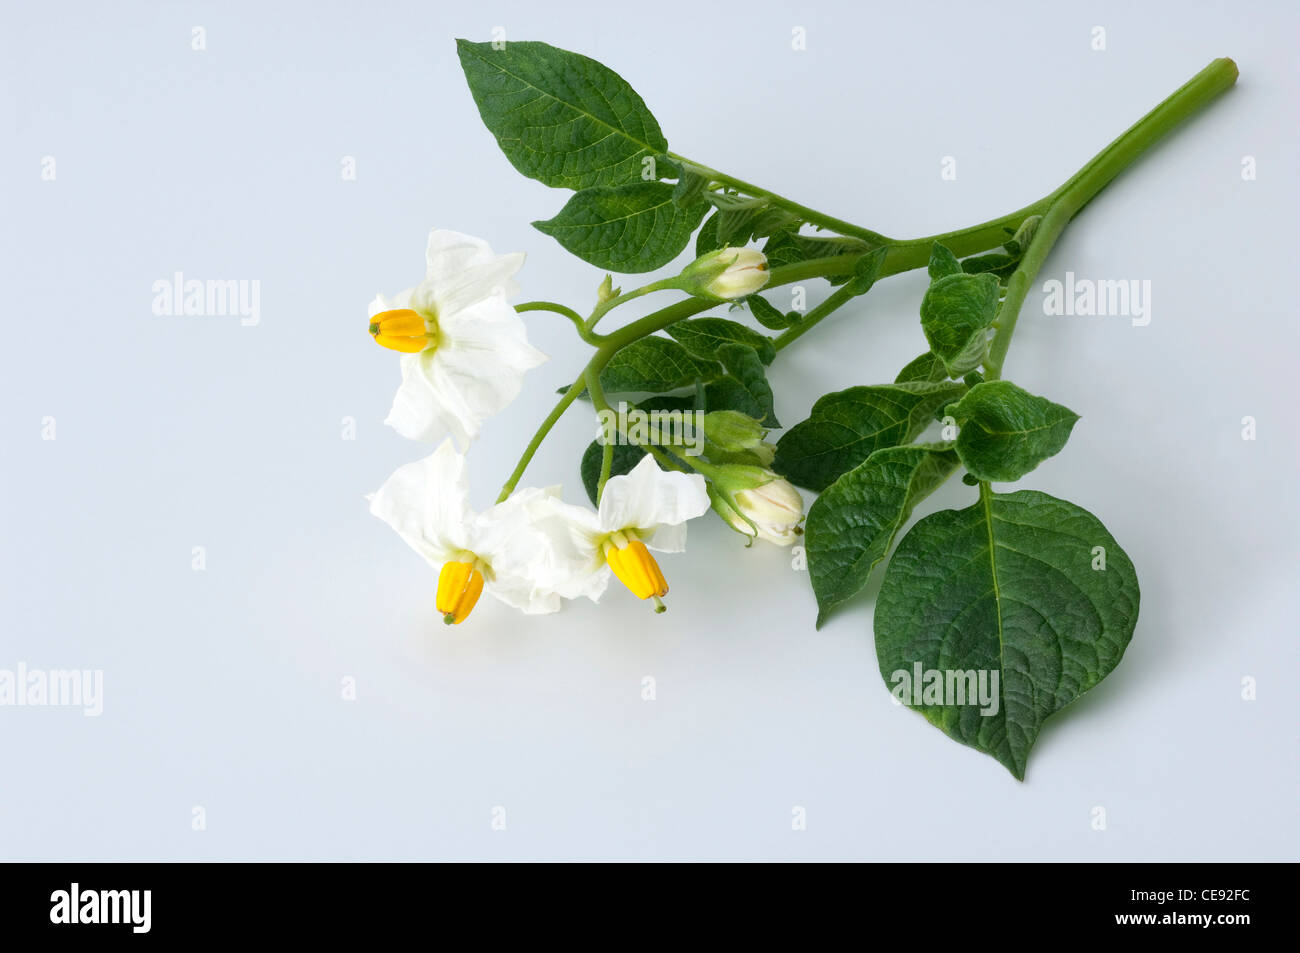 Potato (Solanum tuberosum Quarta). Flowering twig. Studio picture against a white background. Stock Photo